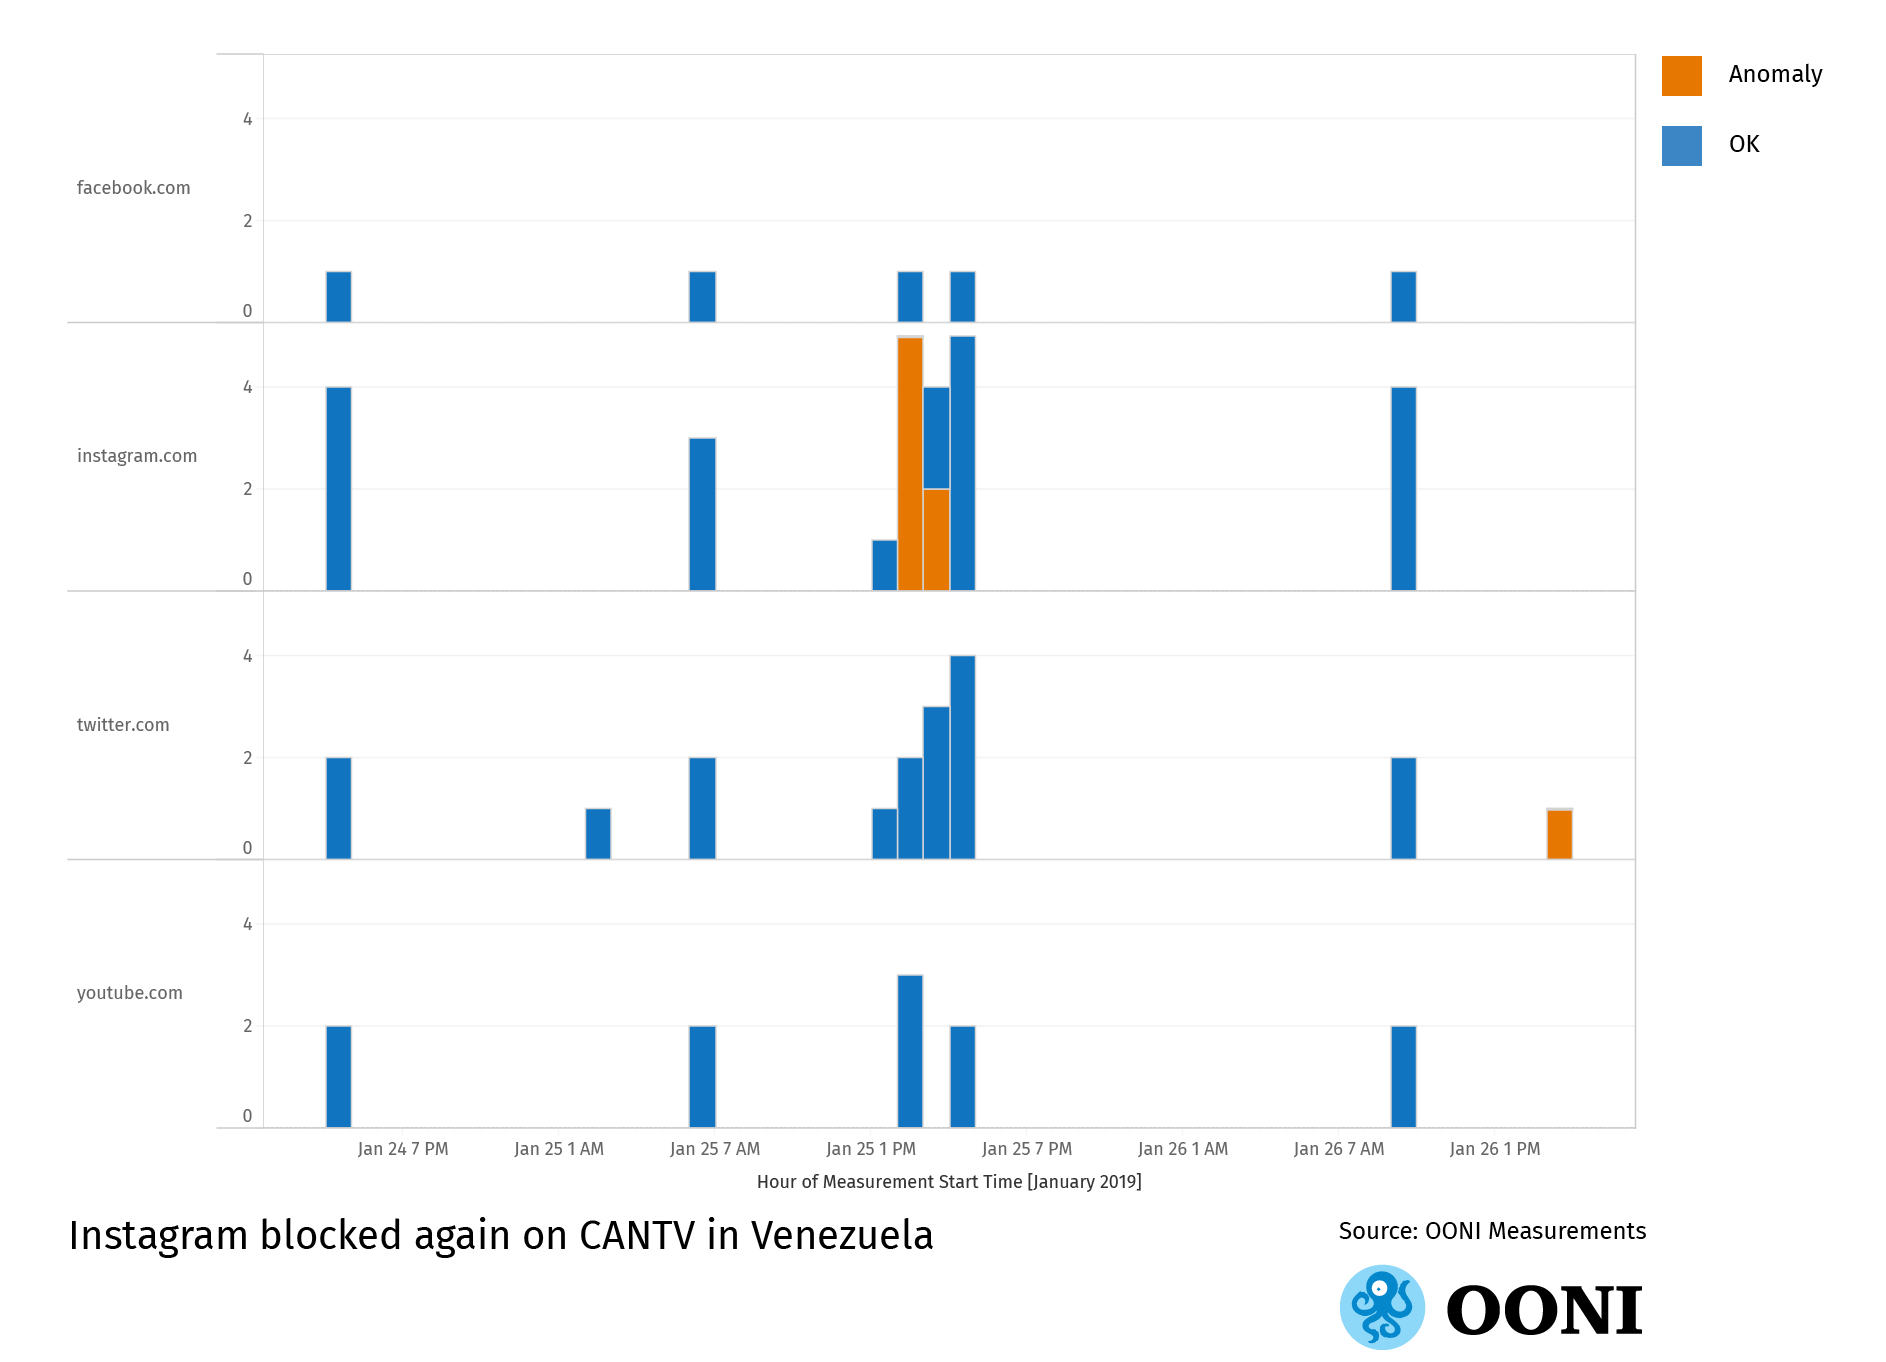 OONI data graph: Blocking of Instagram in Venezuela